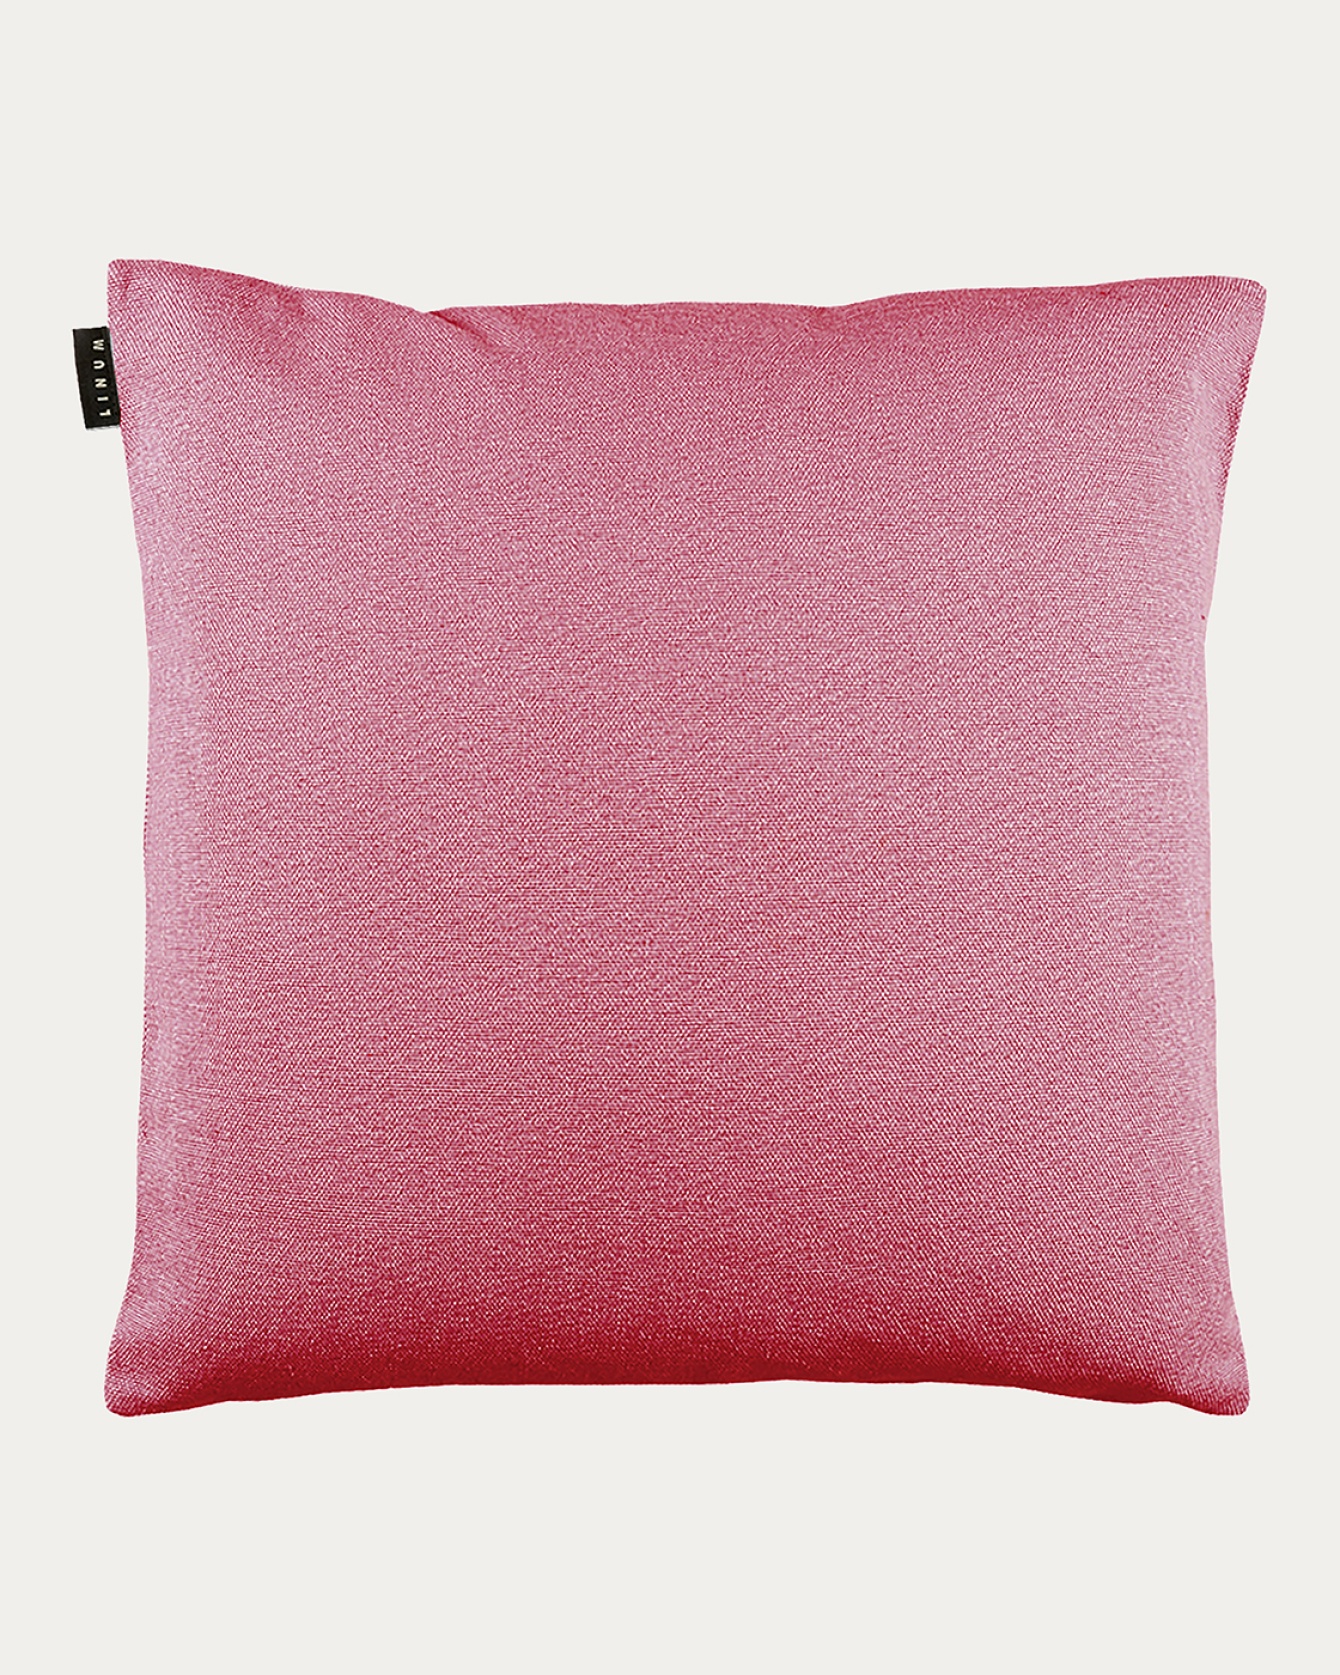 PEPPER Cushion cover 60x60 cm Cerise red